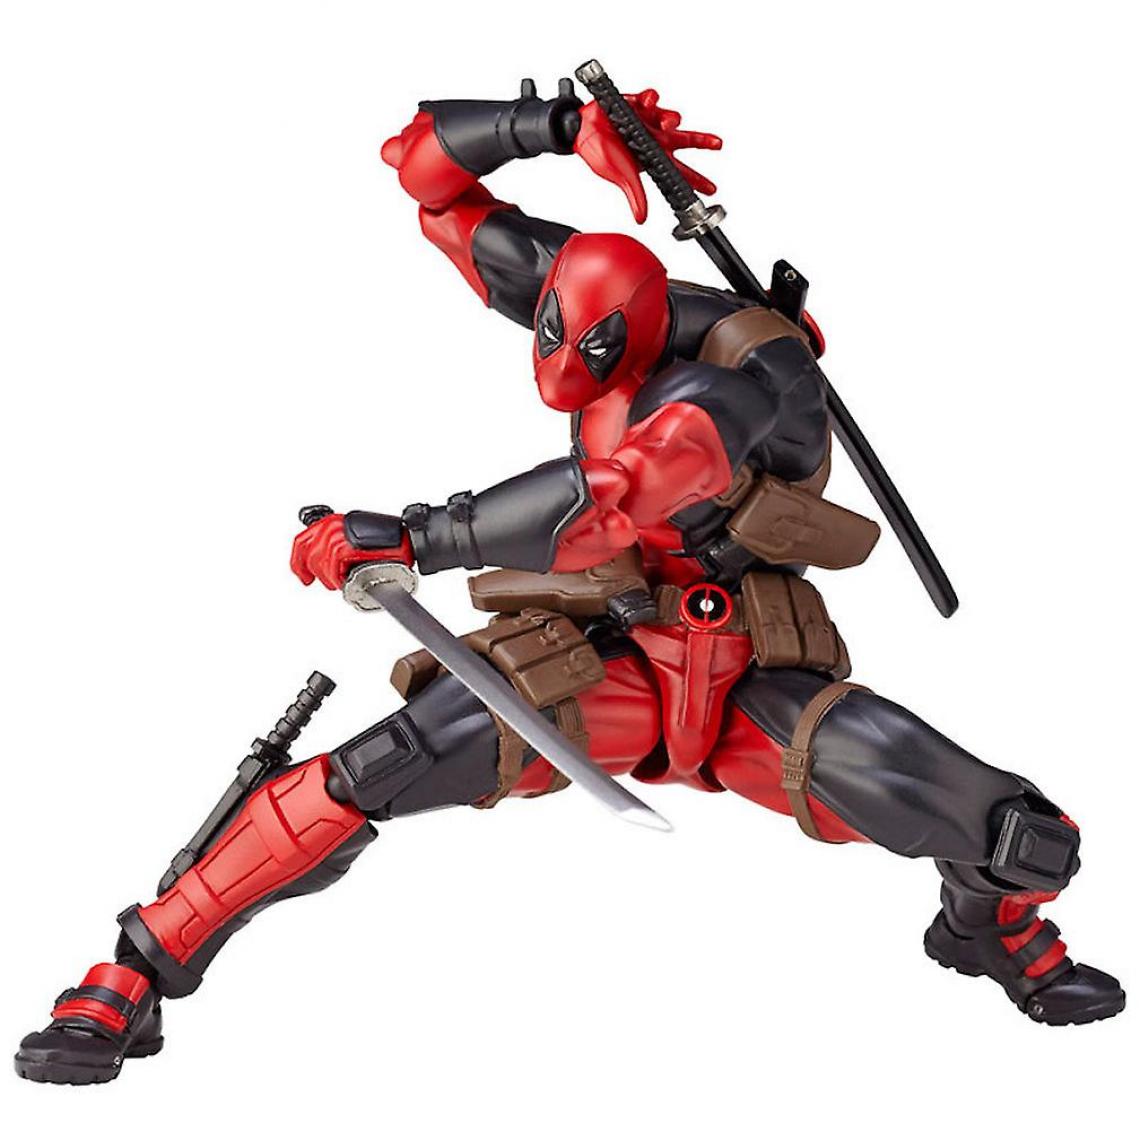 Universal - 16cm Super Hero X-Men Deadpool Figure Variante Jouet Amovible Pvc Action Figure(Rouge) - Mangas